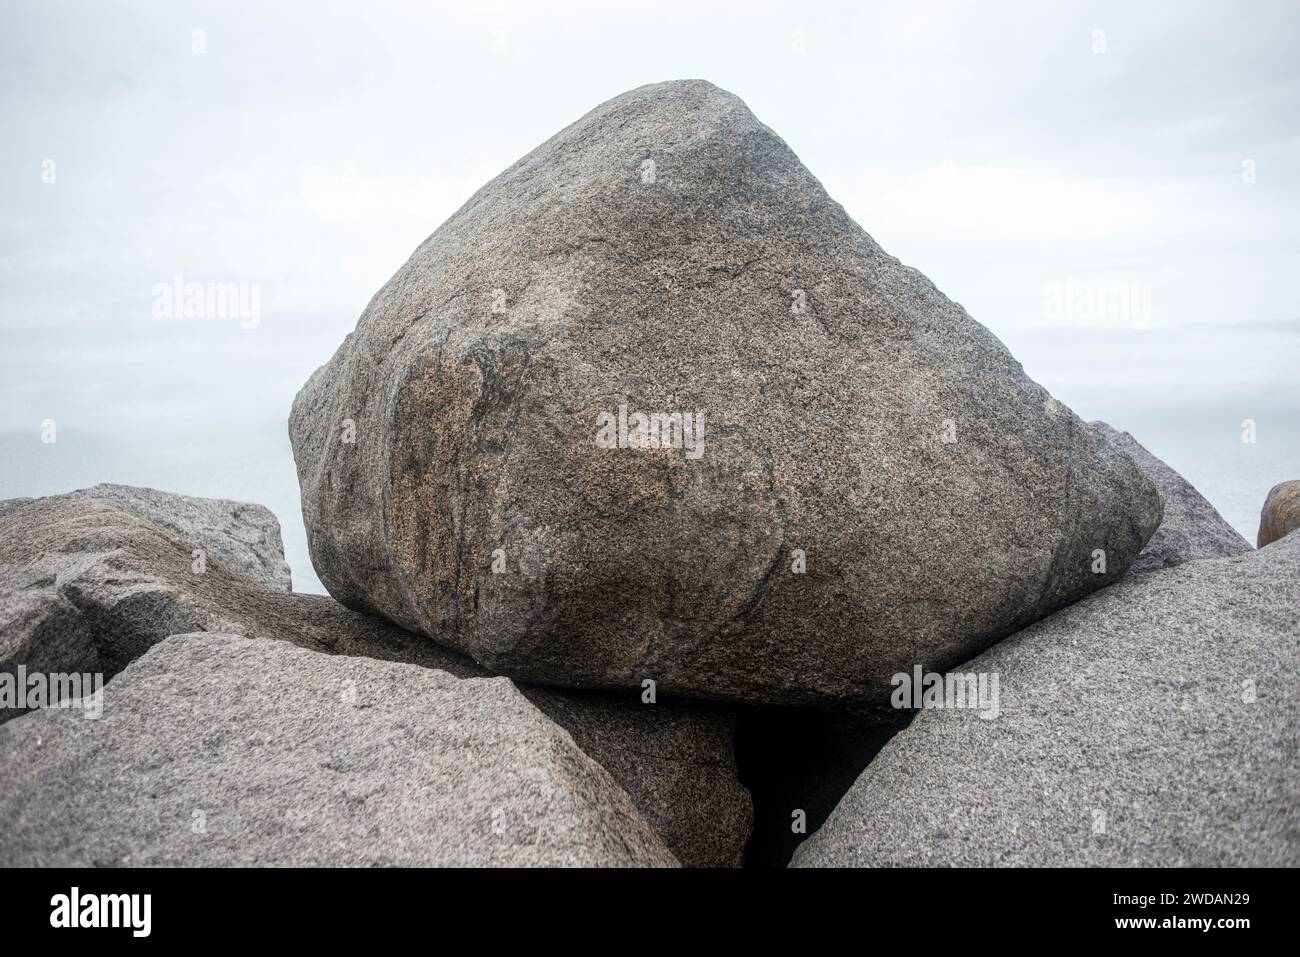 rocas de granito utilizadas como defensa marina contra la erosión costera Foto de stock